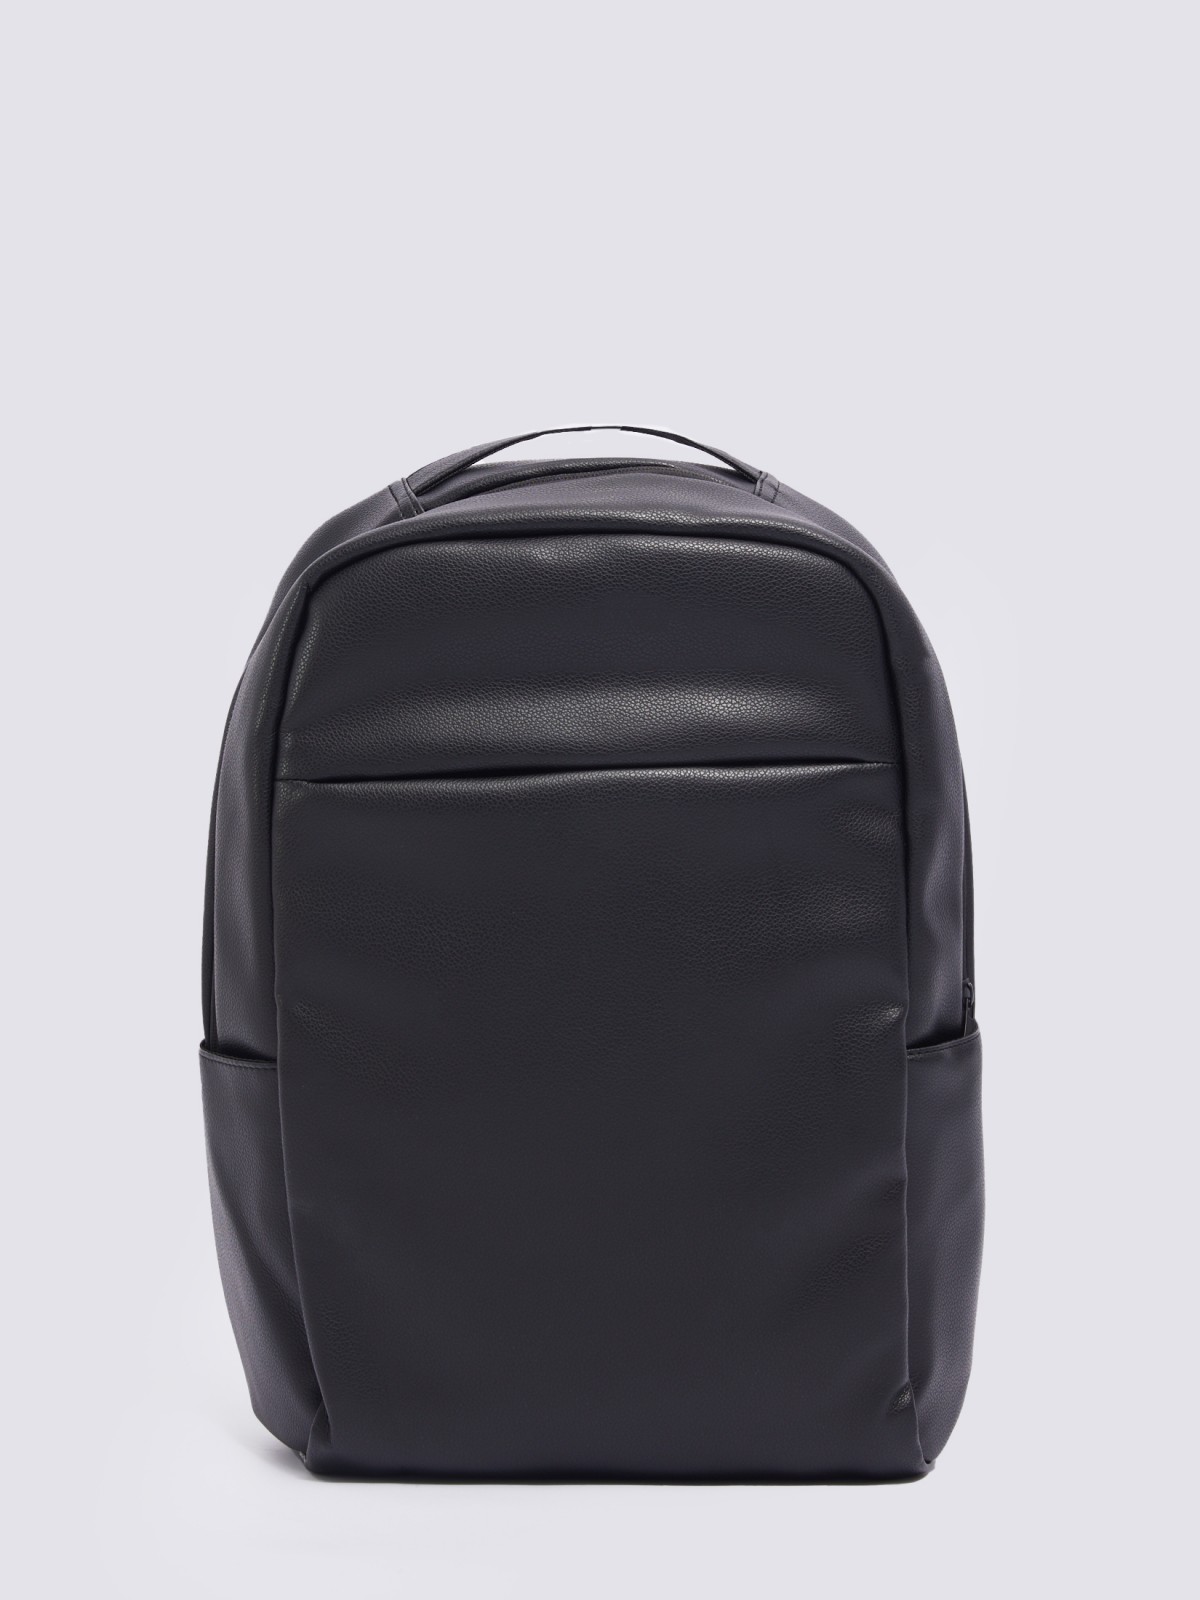 Городской рюкзак из экокожи с отделением для ноутбука/планшета zolla 014119462035, цвет черный, размер No_size - фото 1